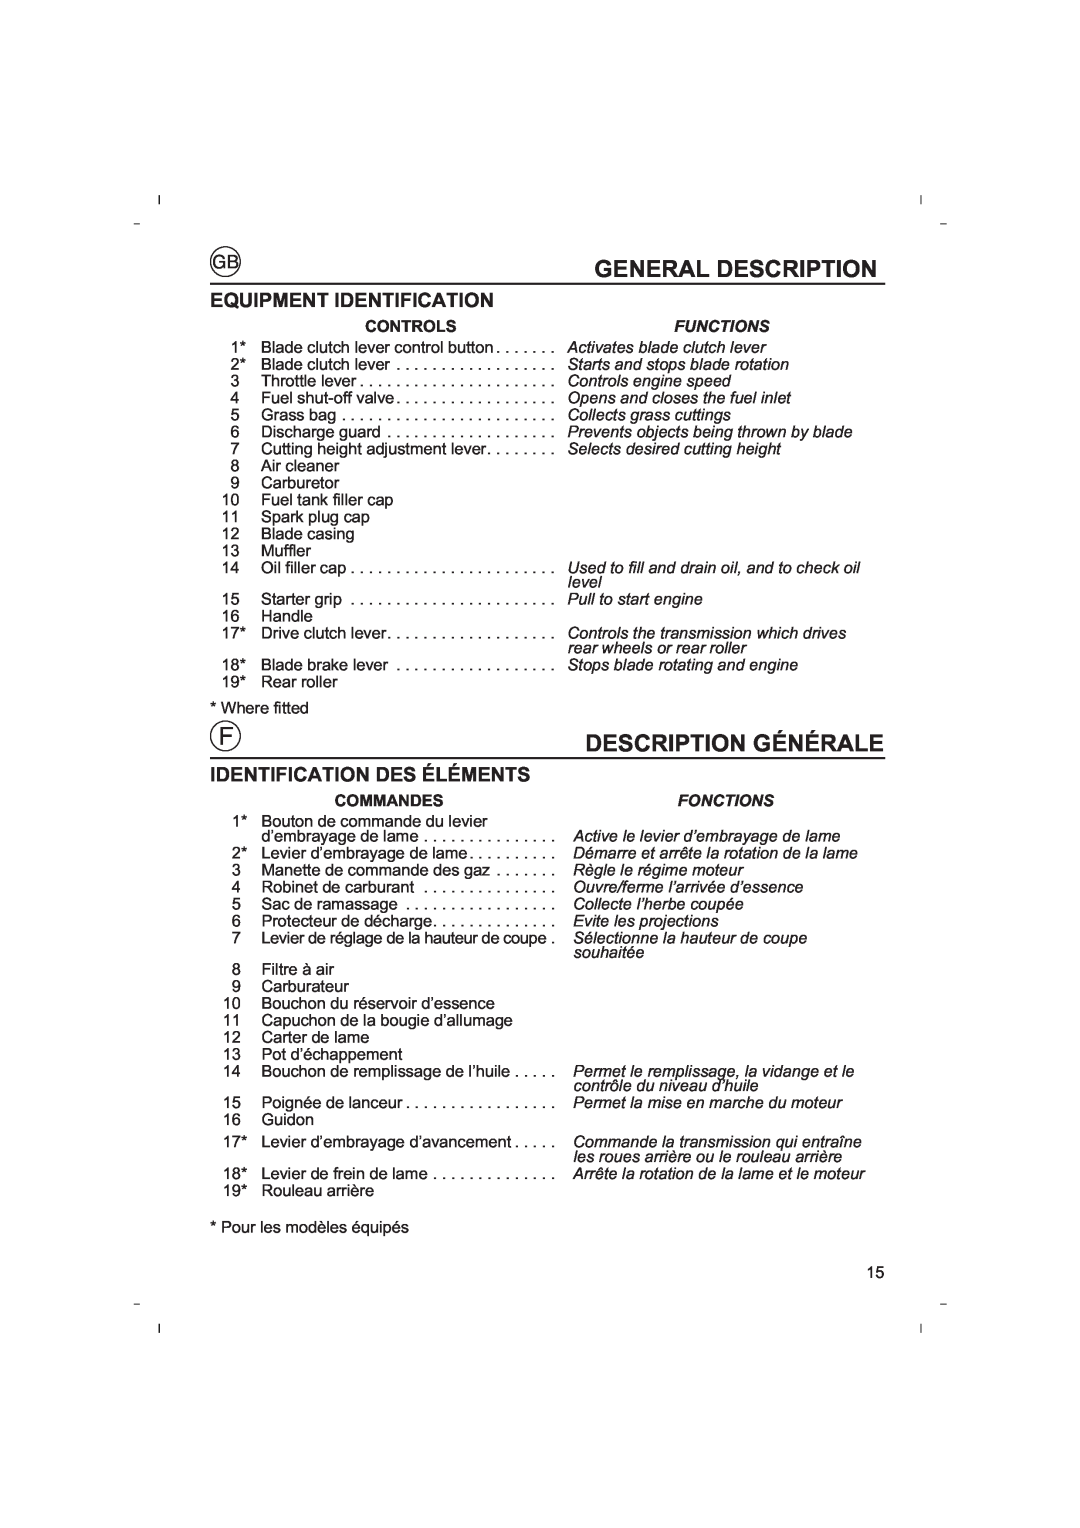 Honda Power Equipment HRB425C owner manual General Description, Description Générale, Equipment Identification 